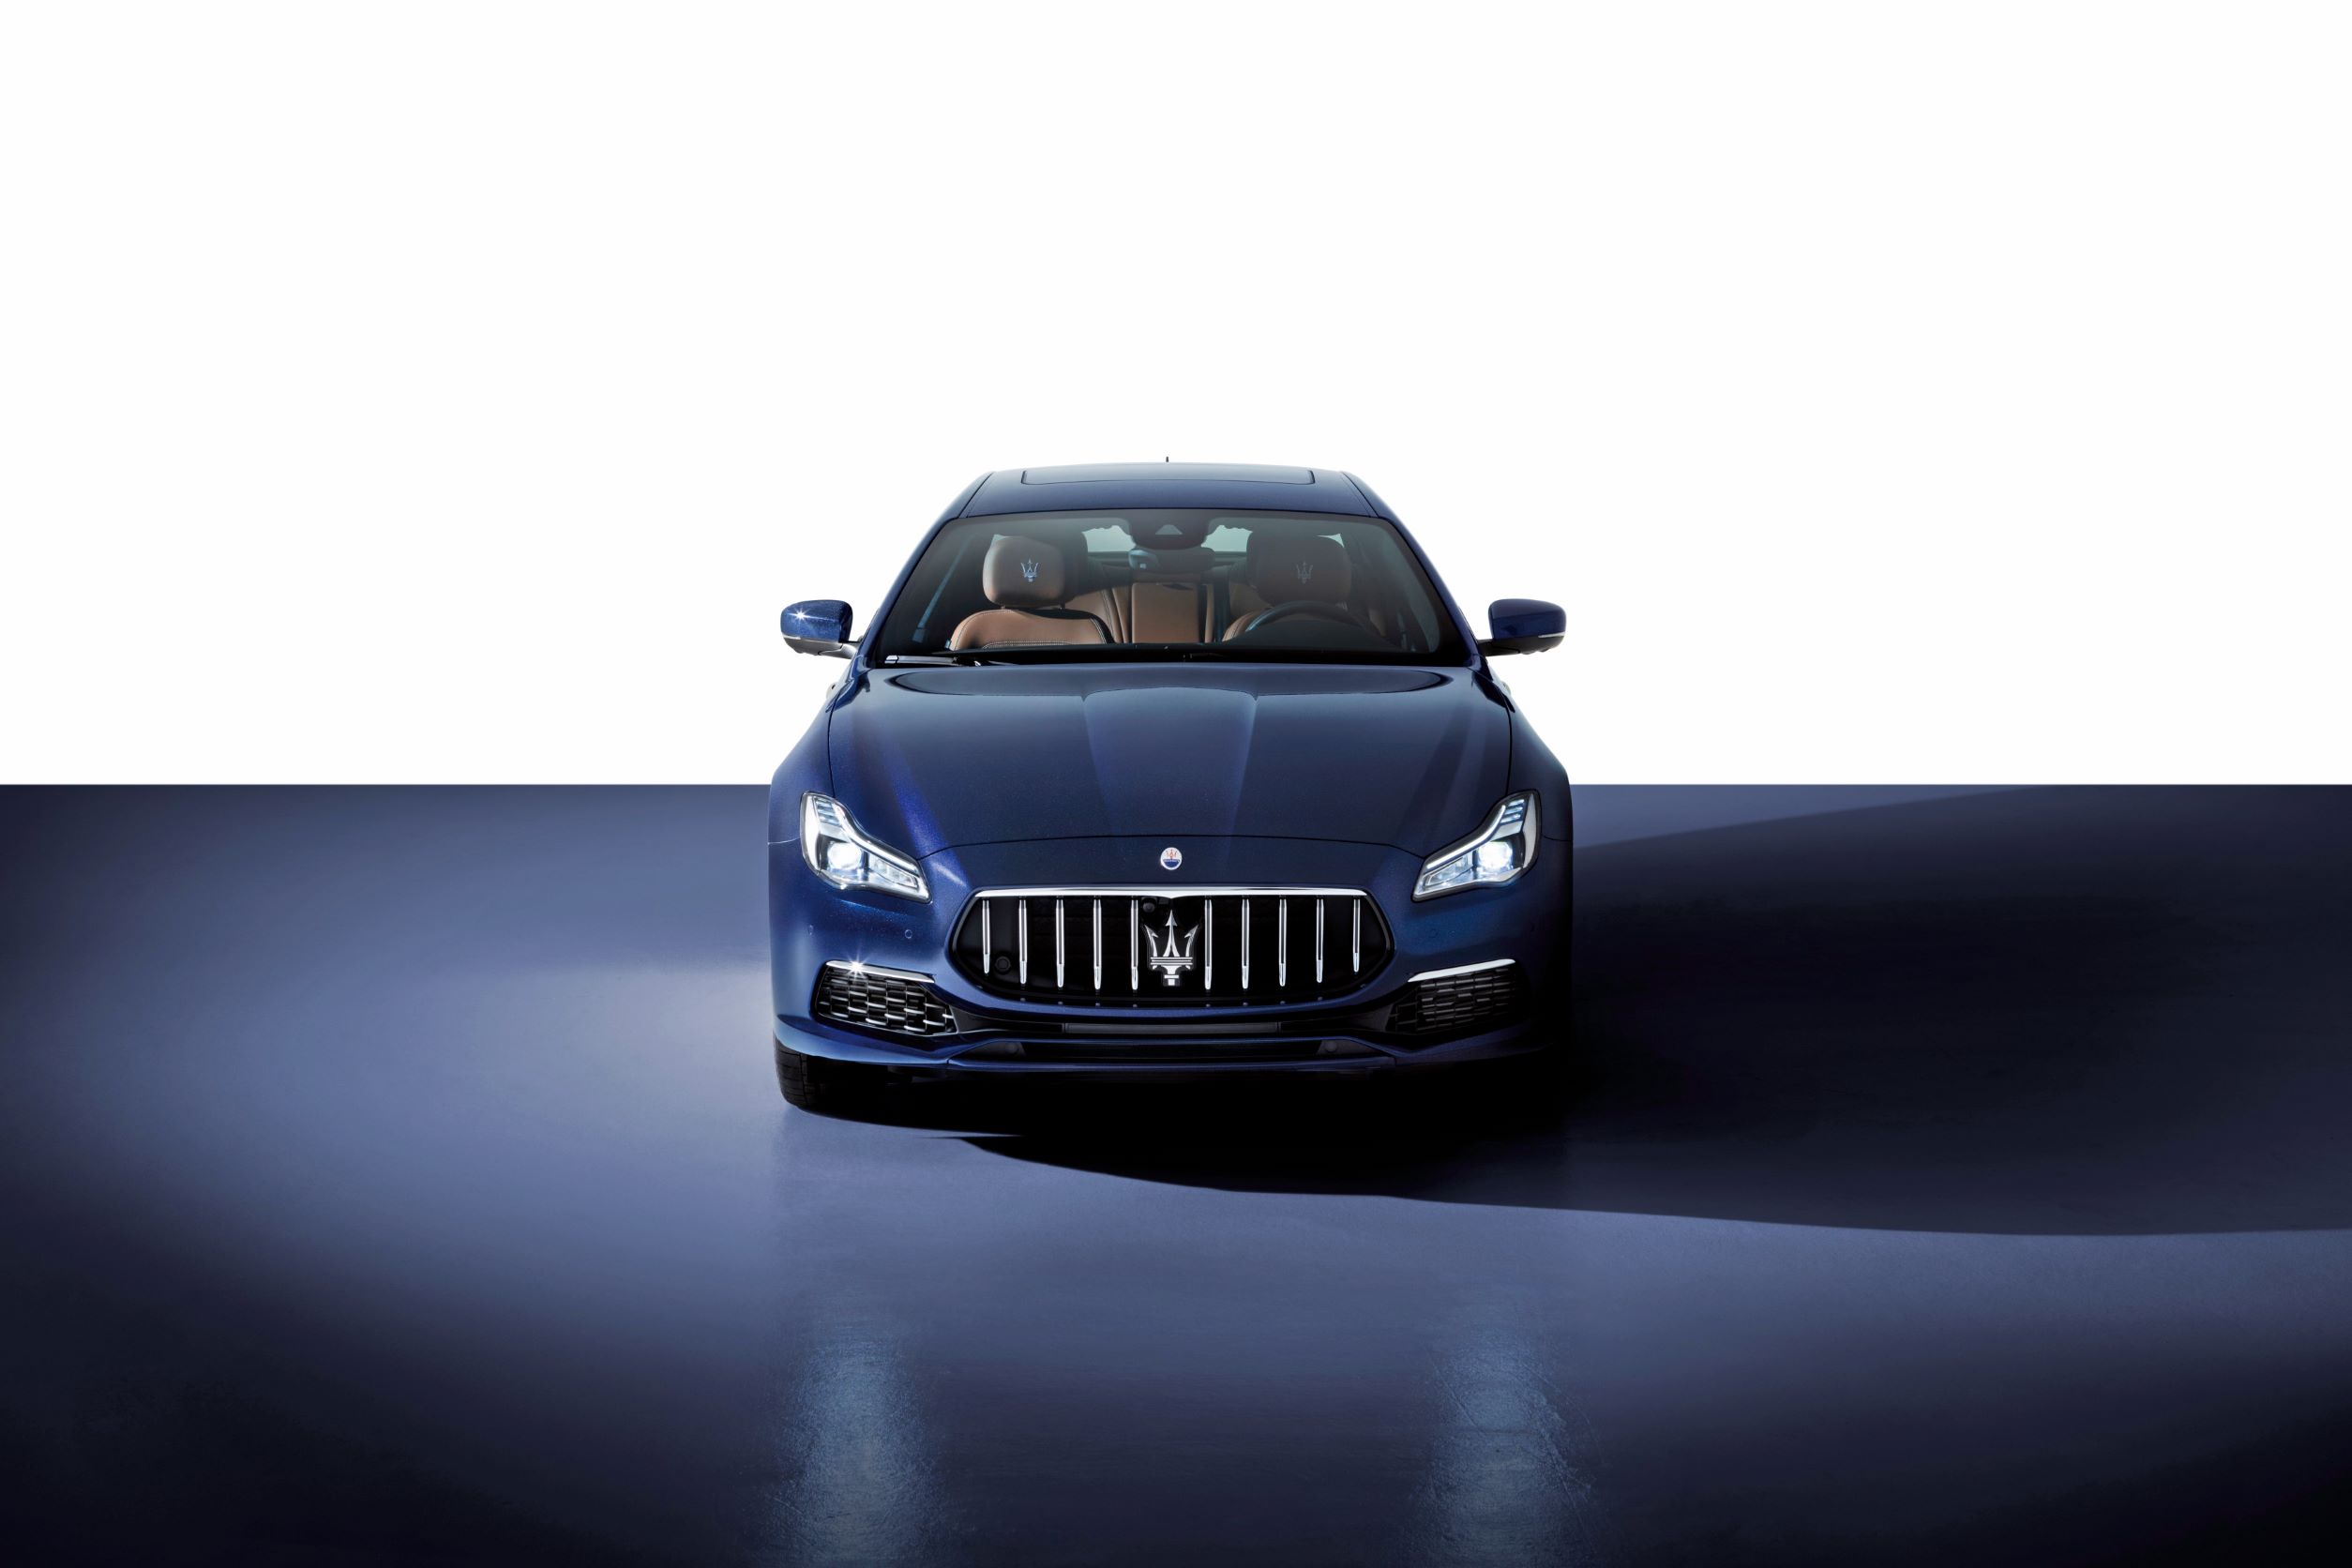 頂著碩大三叉戟廠徽，Quattroporte 是 Maserati 家族中極具品牌魅力的經典車系。